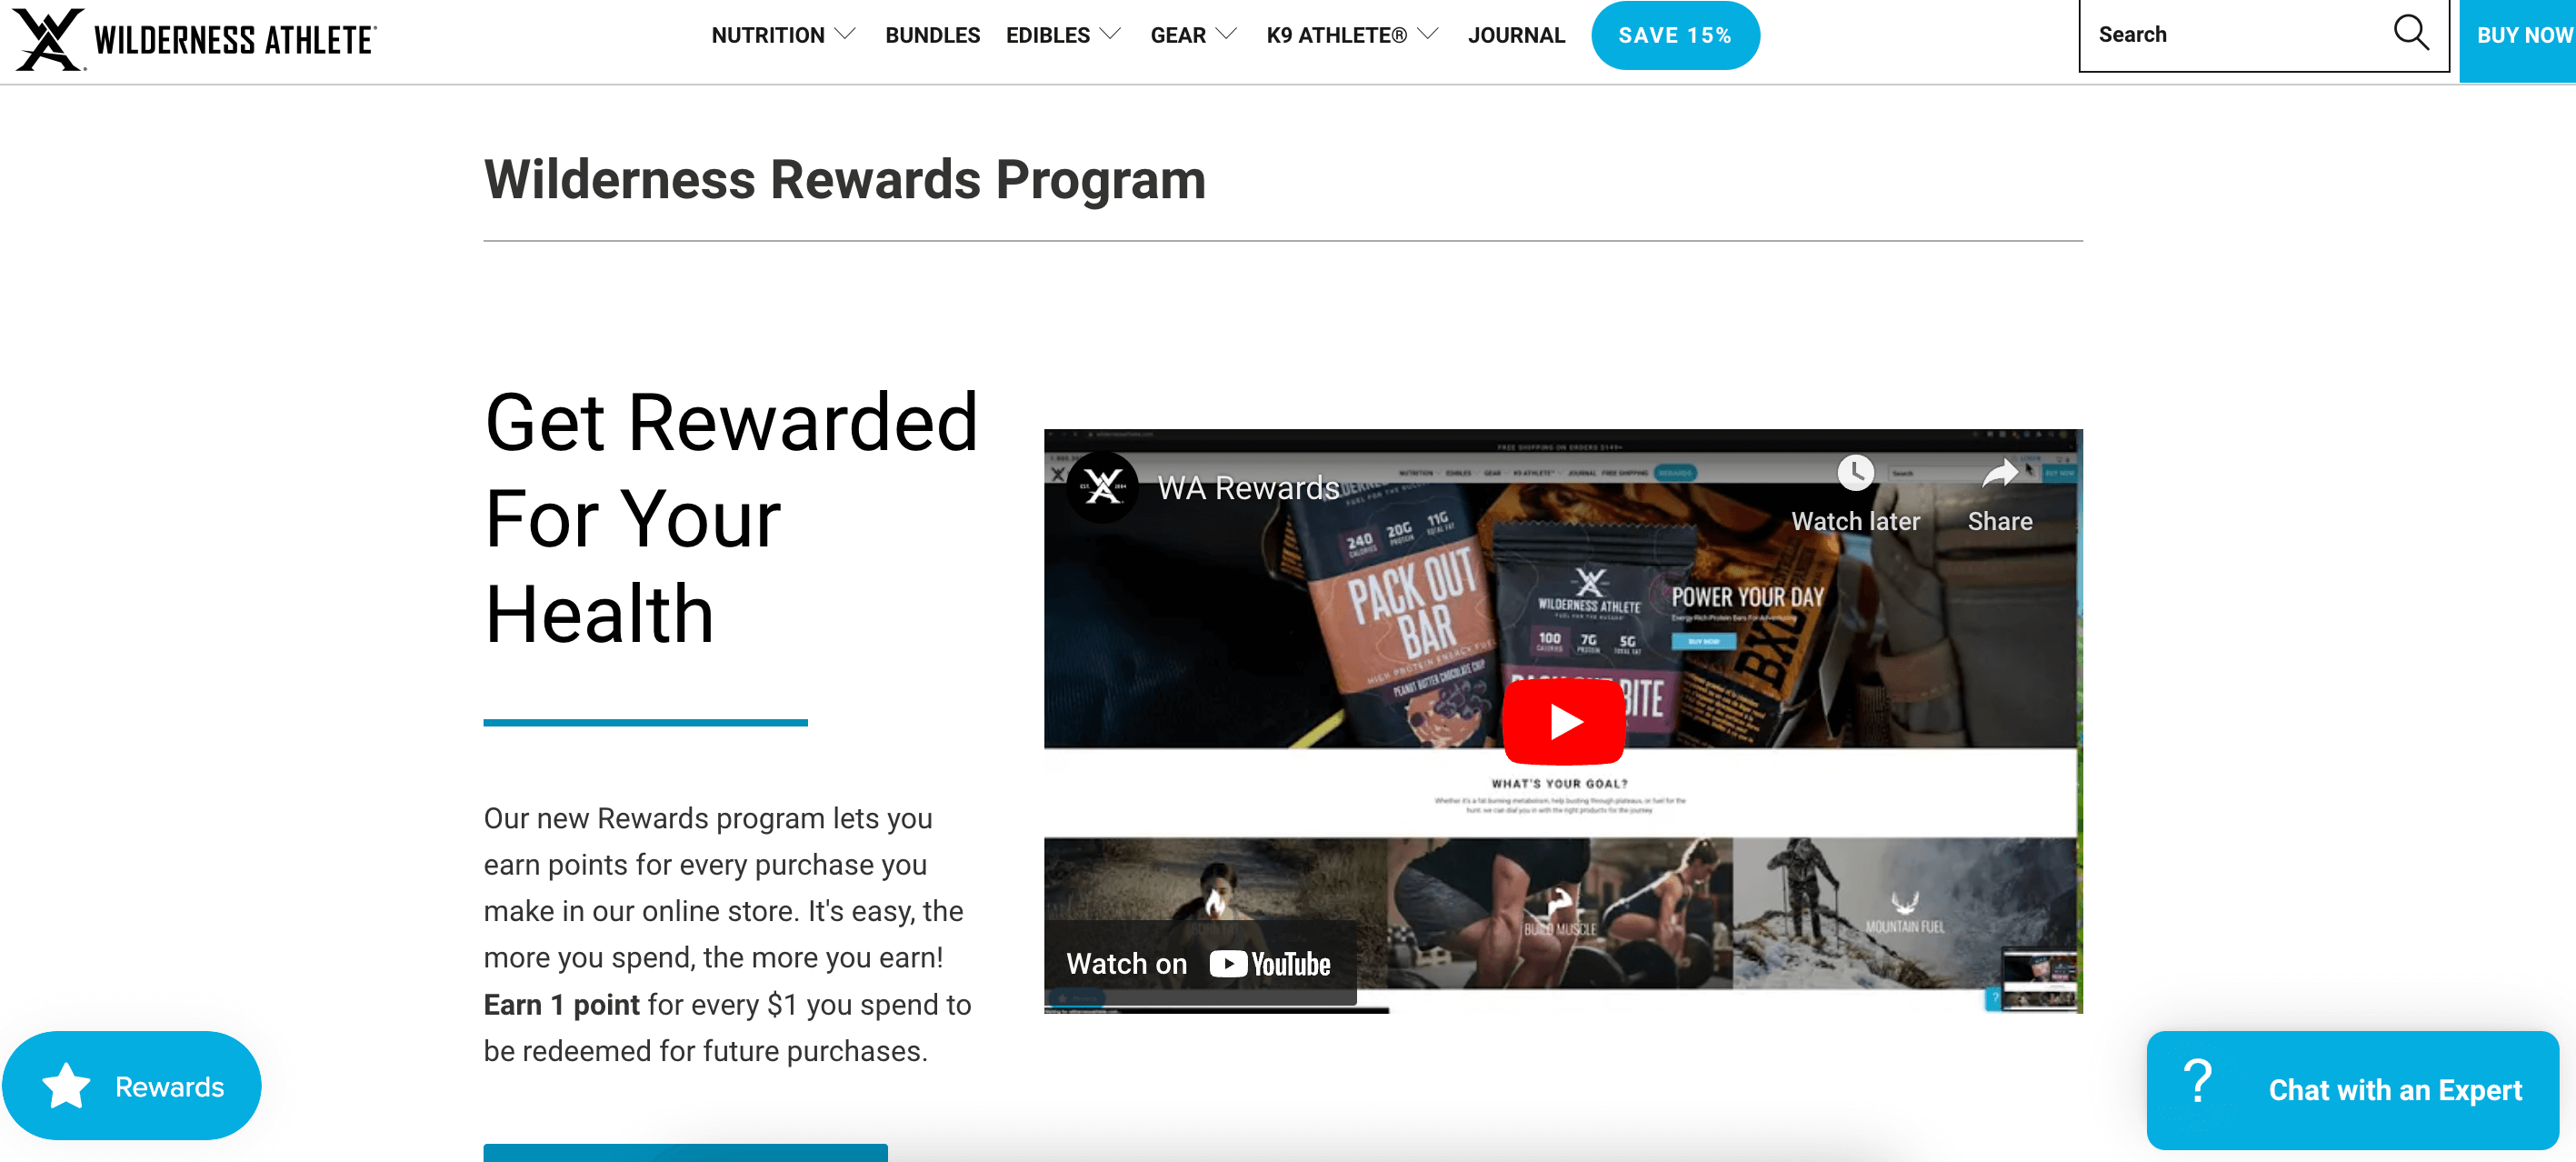 screenshot of wilderness athlete rewards program page